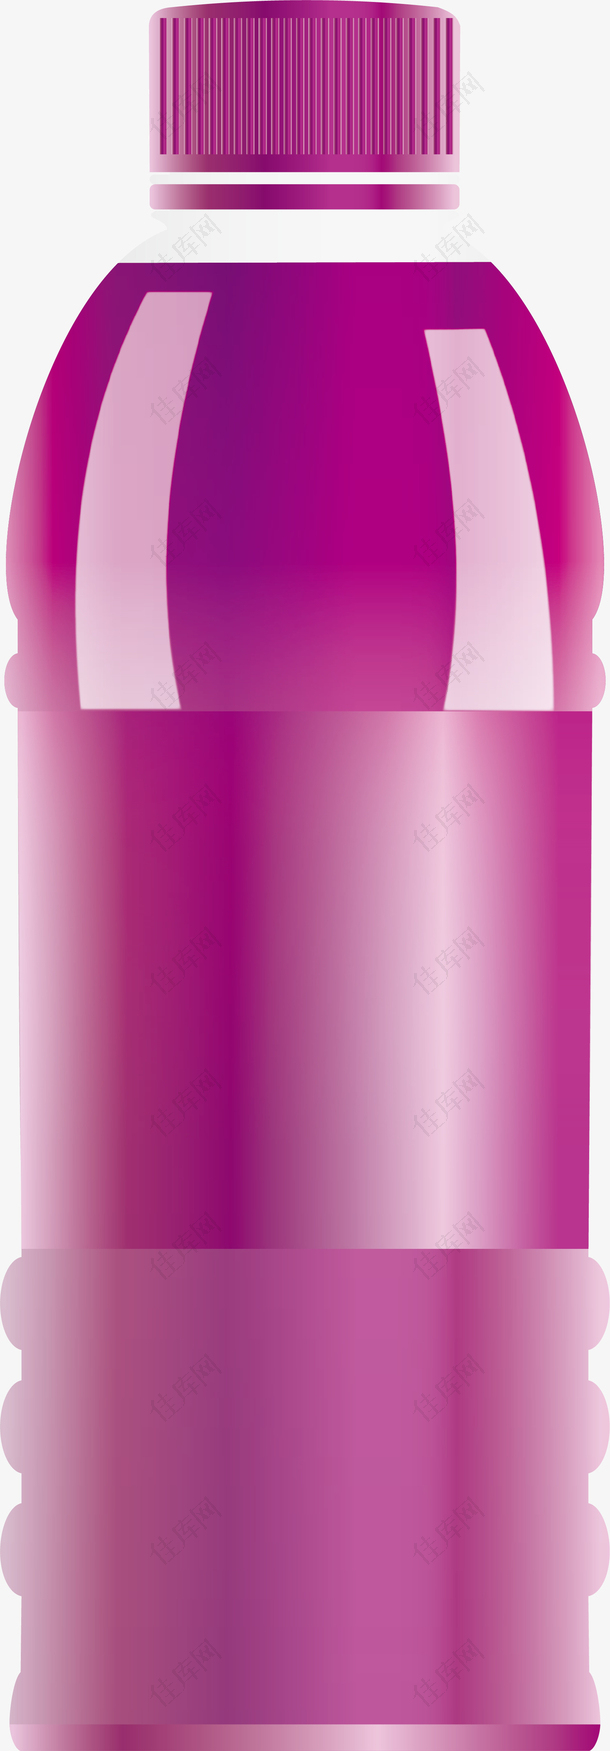 紫色瓶子